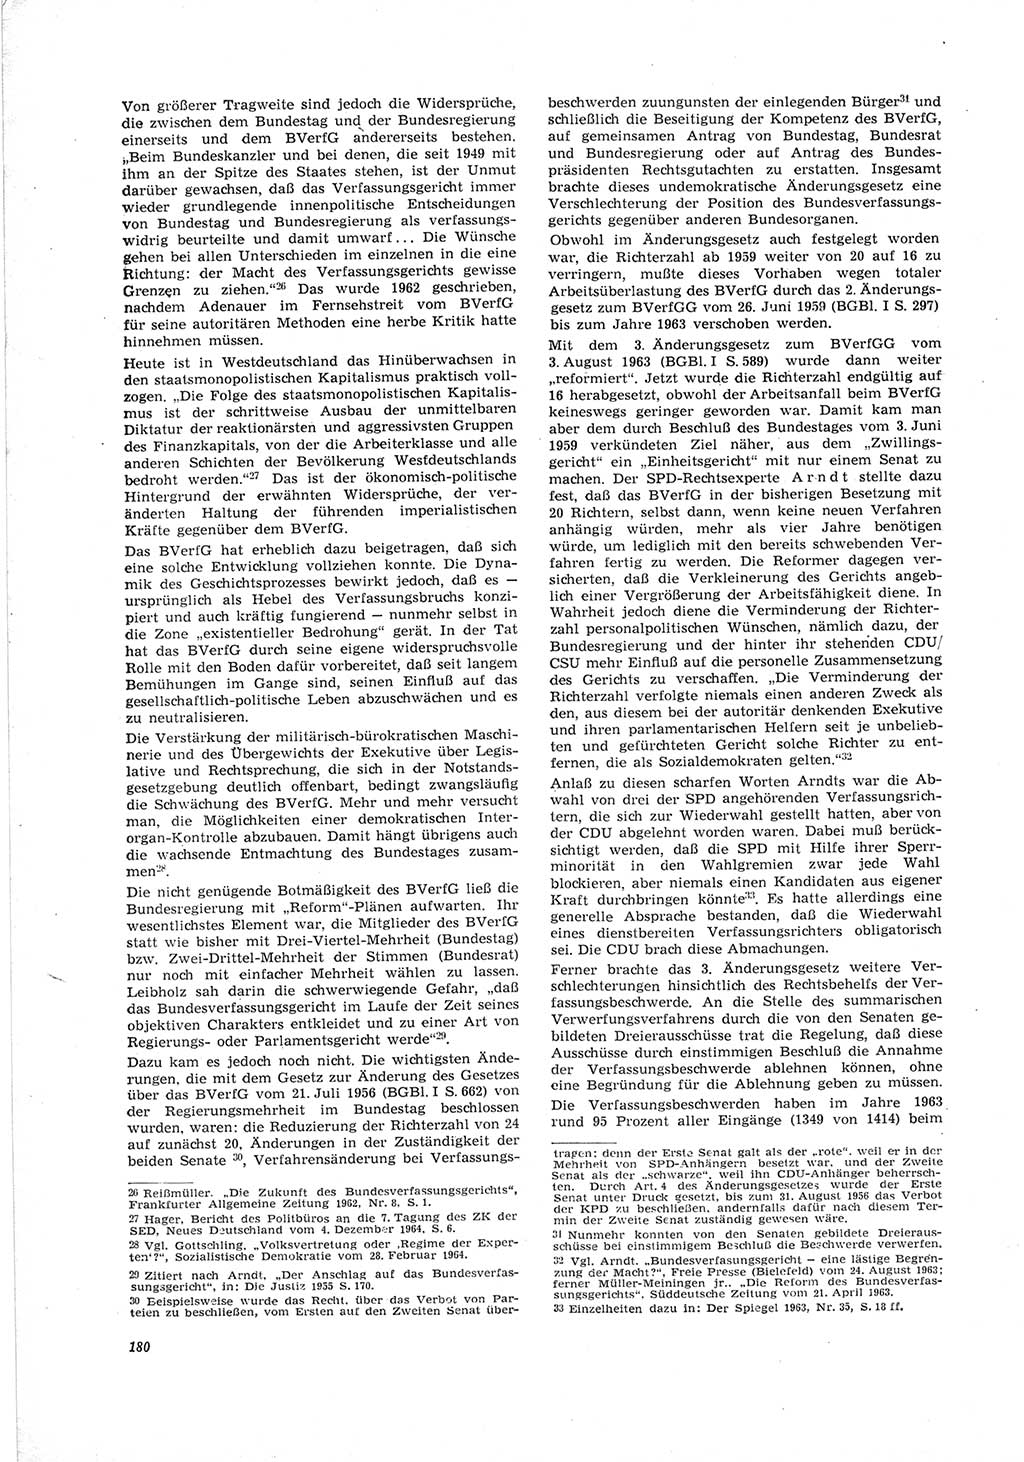 Neue Justiz (NJ), Zeitschrift für Recht und Rechtswissenschaft [Deutsche Demokratische Republik (DDR)], 19. Jahrgang 1965, Seite 180 (NJ DDR 1965, S. 180)